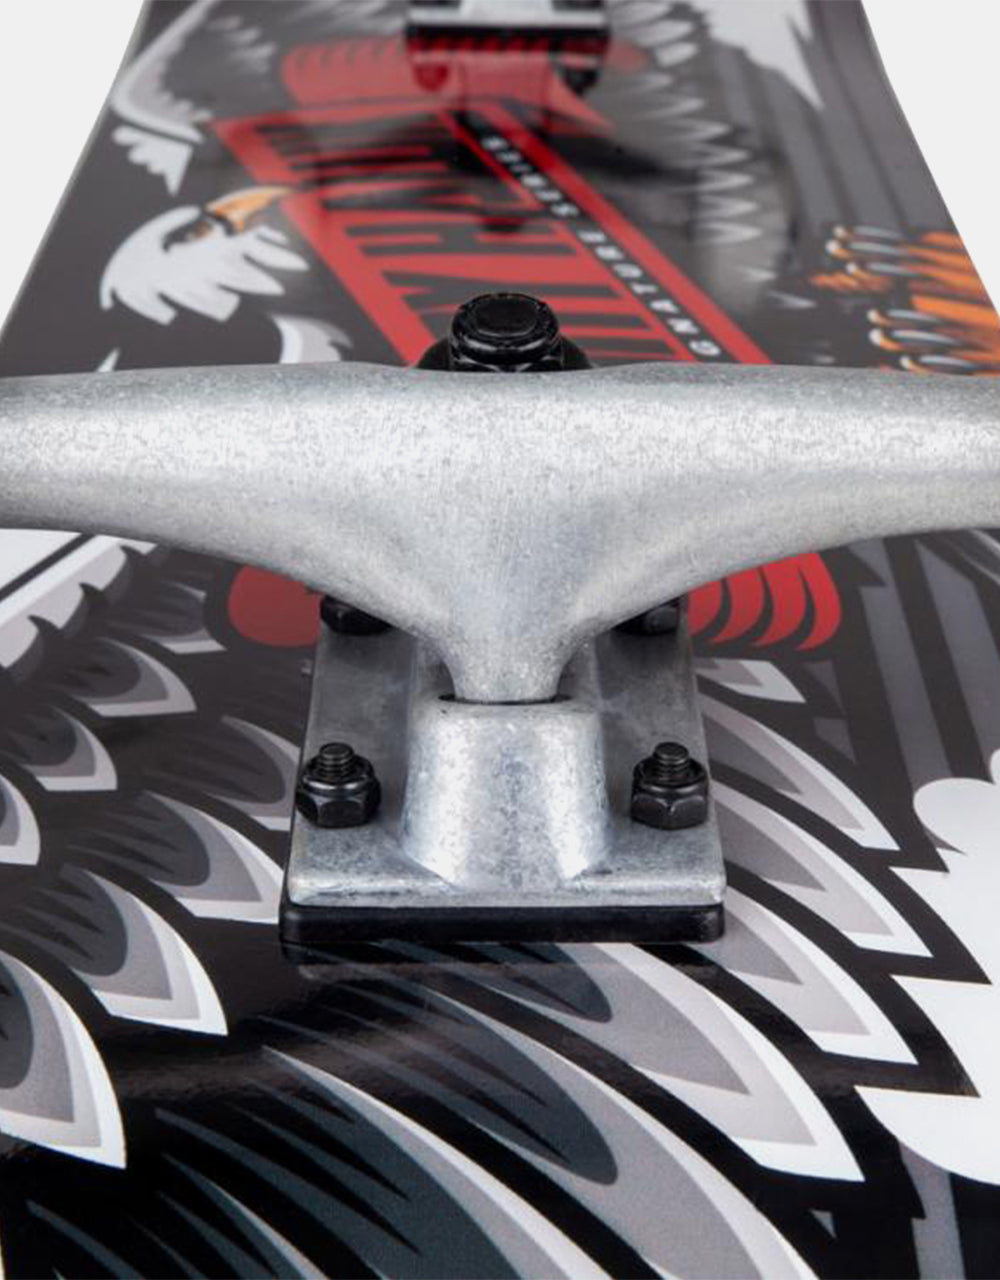 Tony Hawk 180 Wingspan Special Complete Skateboard - 8"